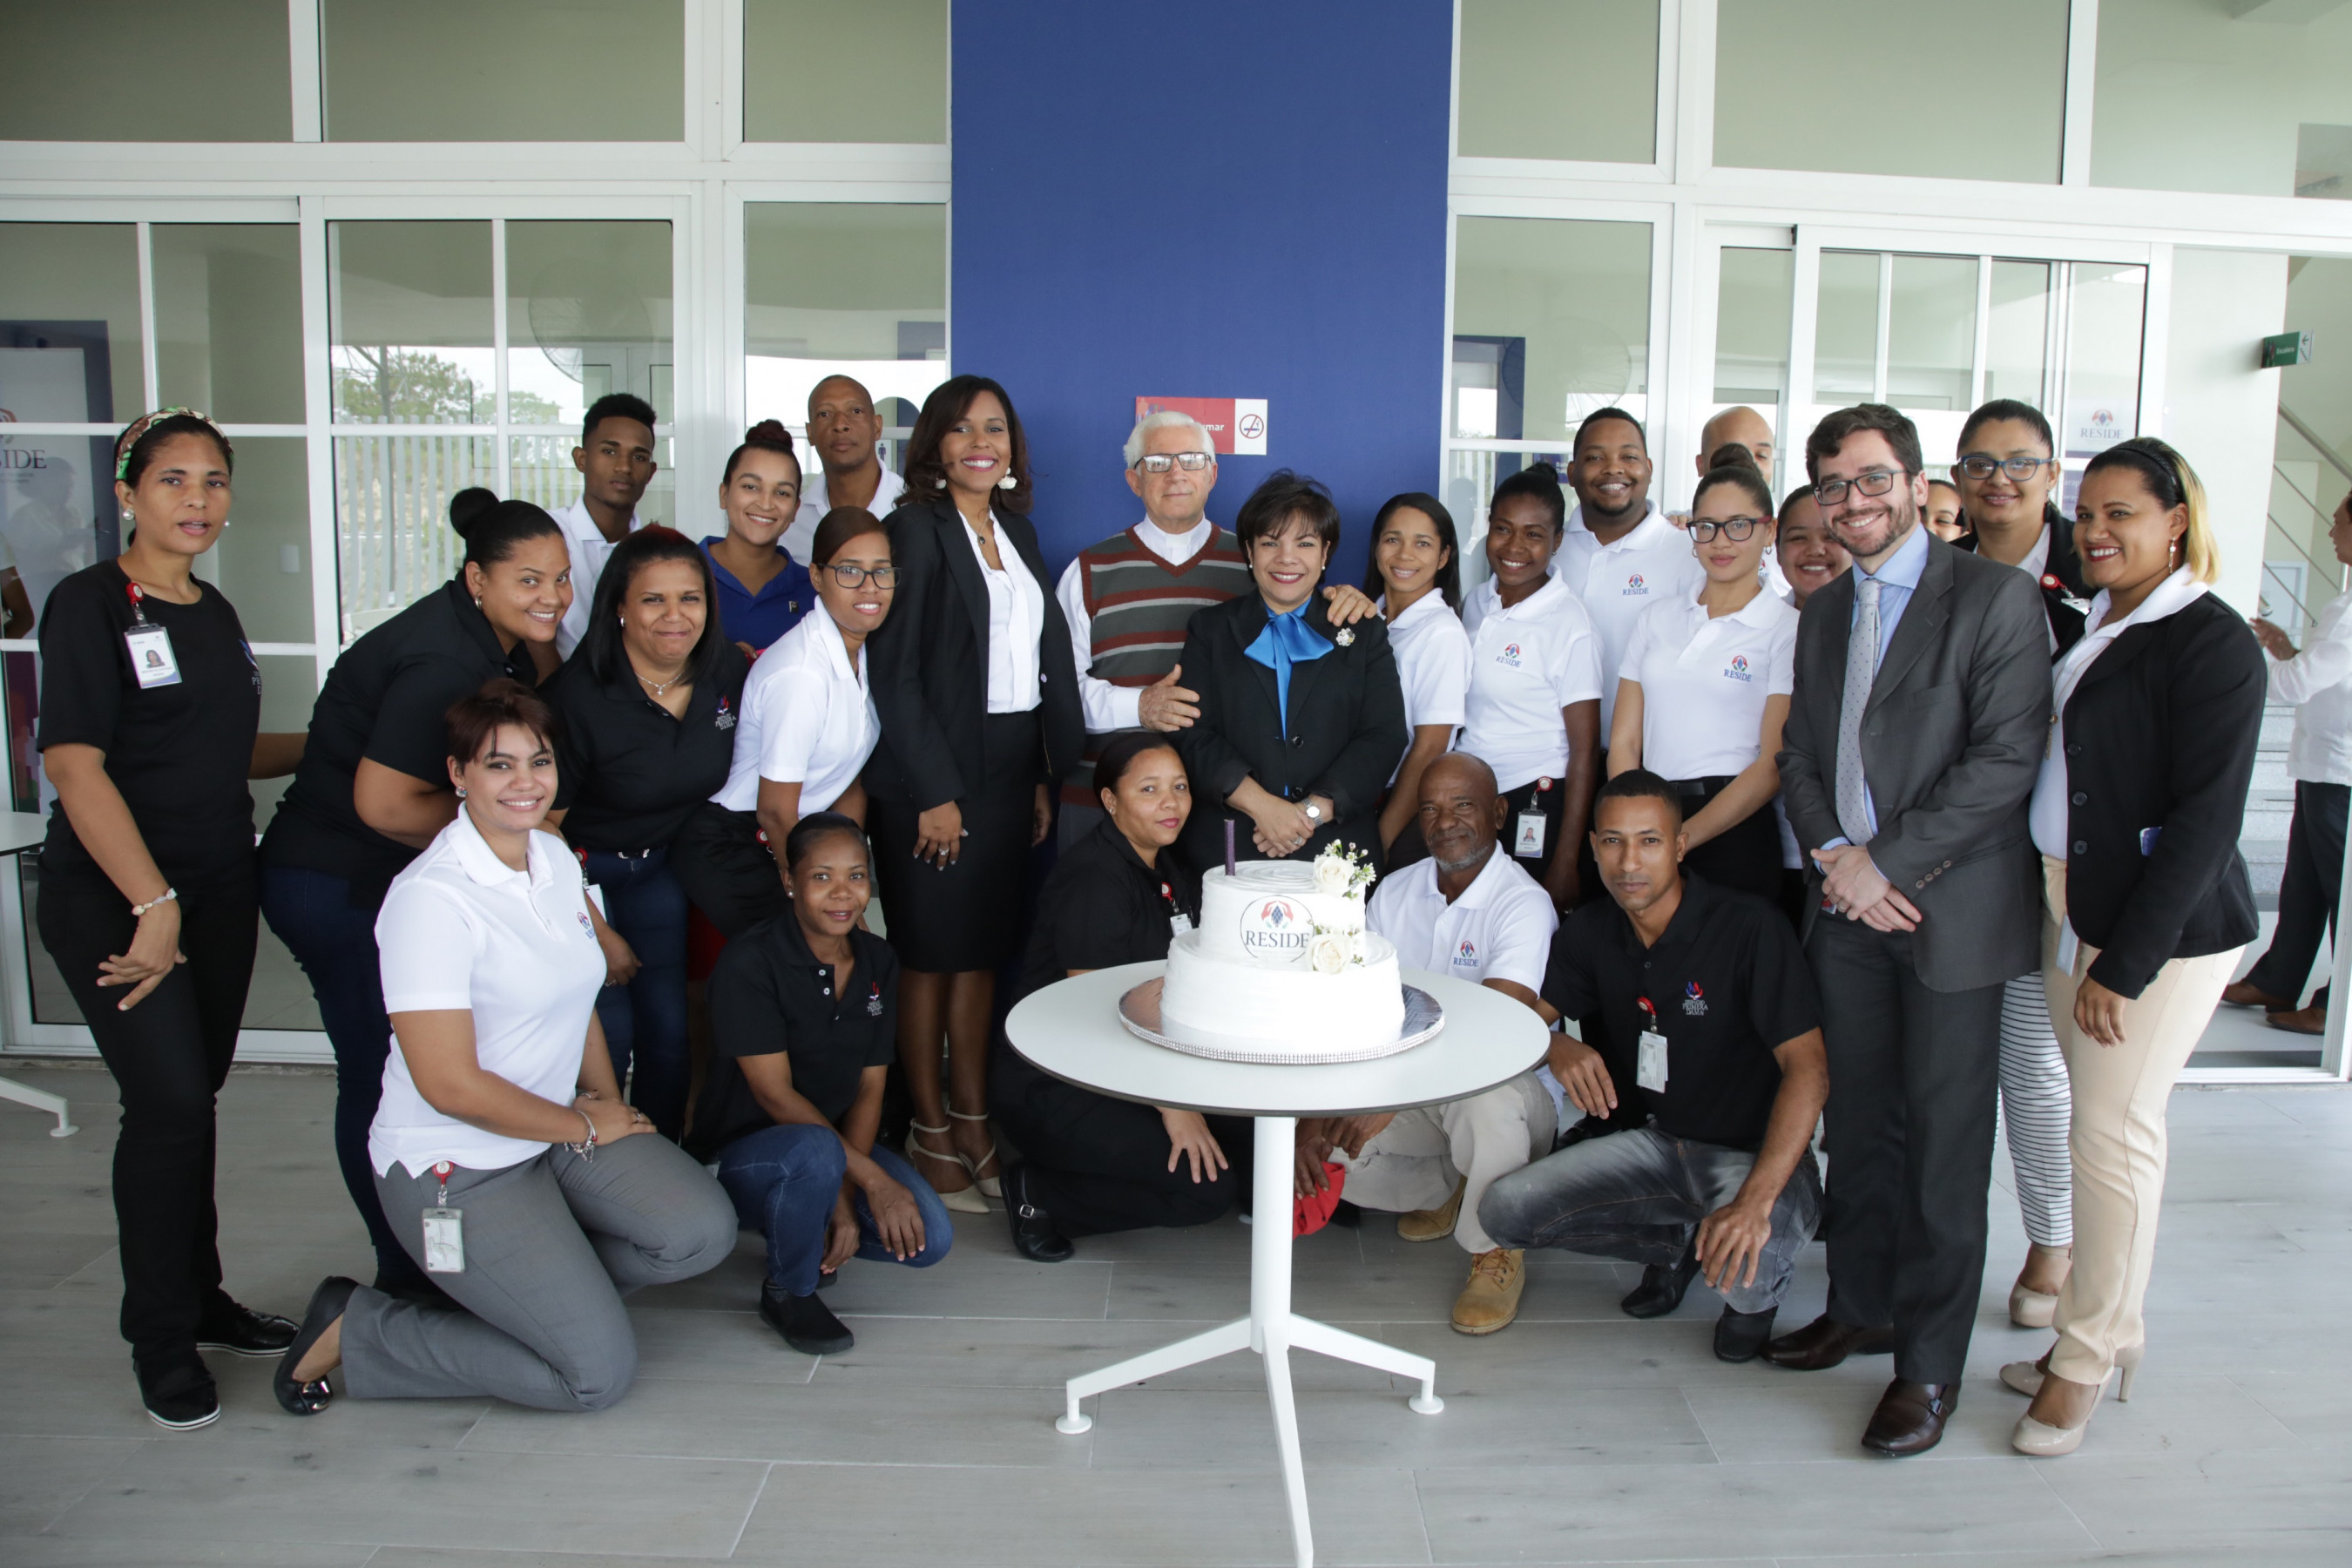 REPÚBLICA DOMINICANA: Centro de Atención Sicosocial y Desarrollo Humano (RESIDE) celebra primer aniversario con importantes aportes en salud mental 